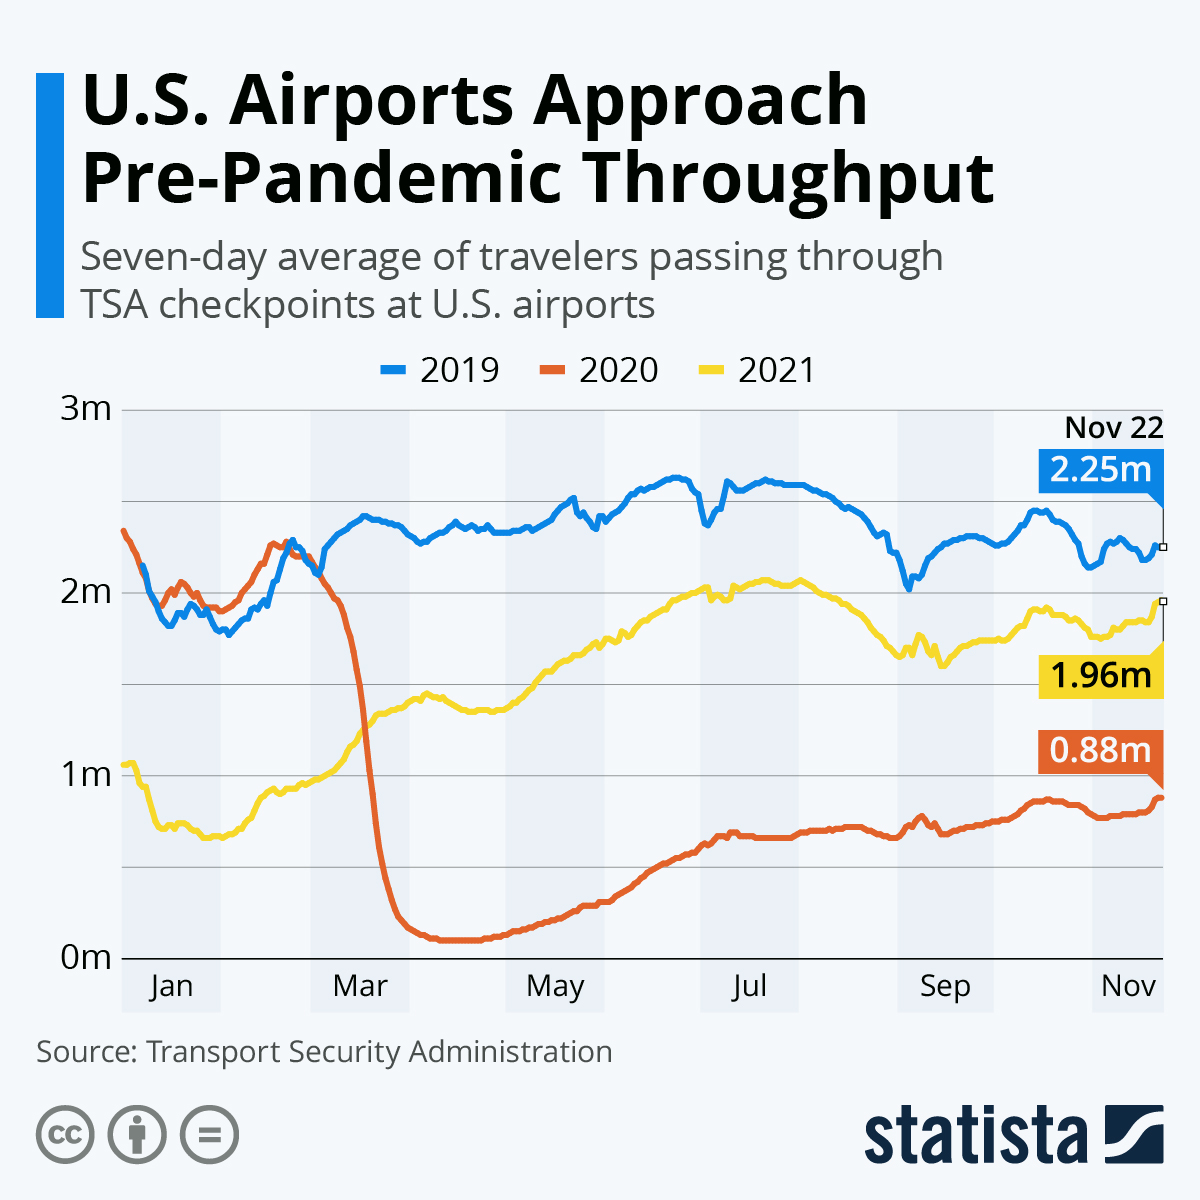 U.S. Airports Approach Pre-Pandemic Throughput